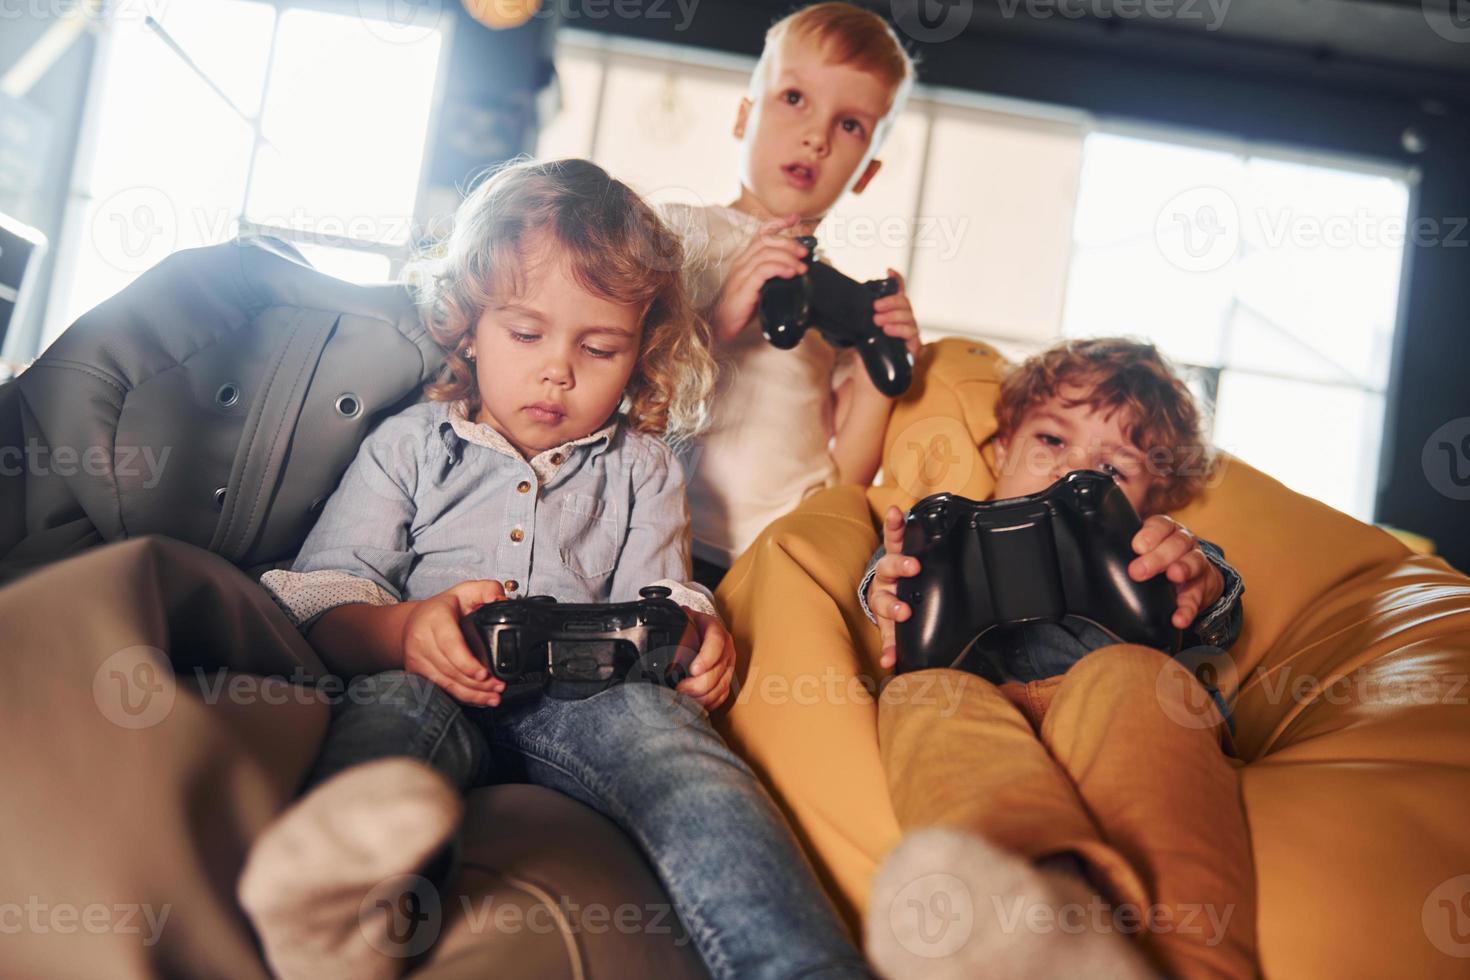 kinderen in gewoontjes kleren zittend samen met controleur en spelen video spellen foto